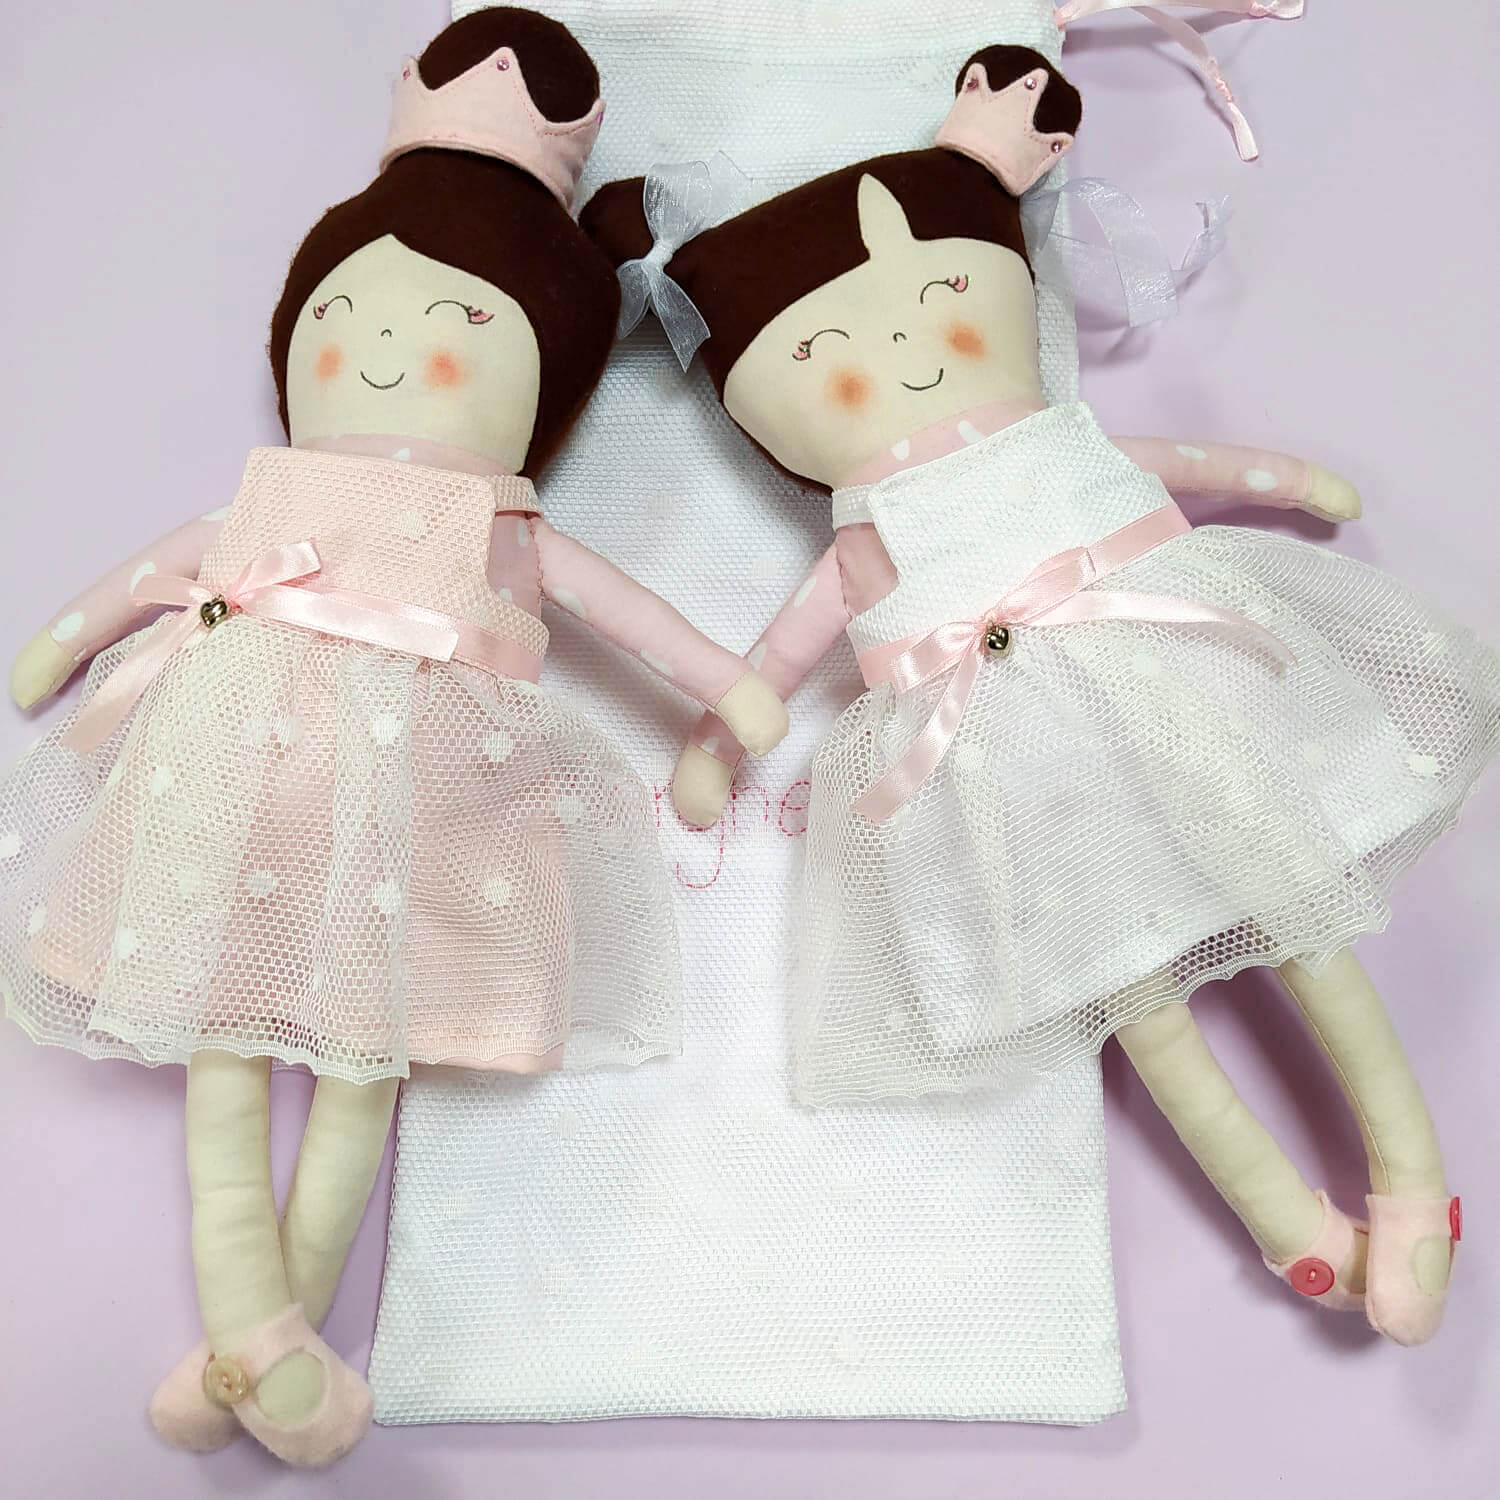 Bambole di stoffa fatte a mano